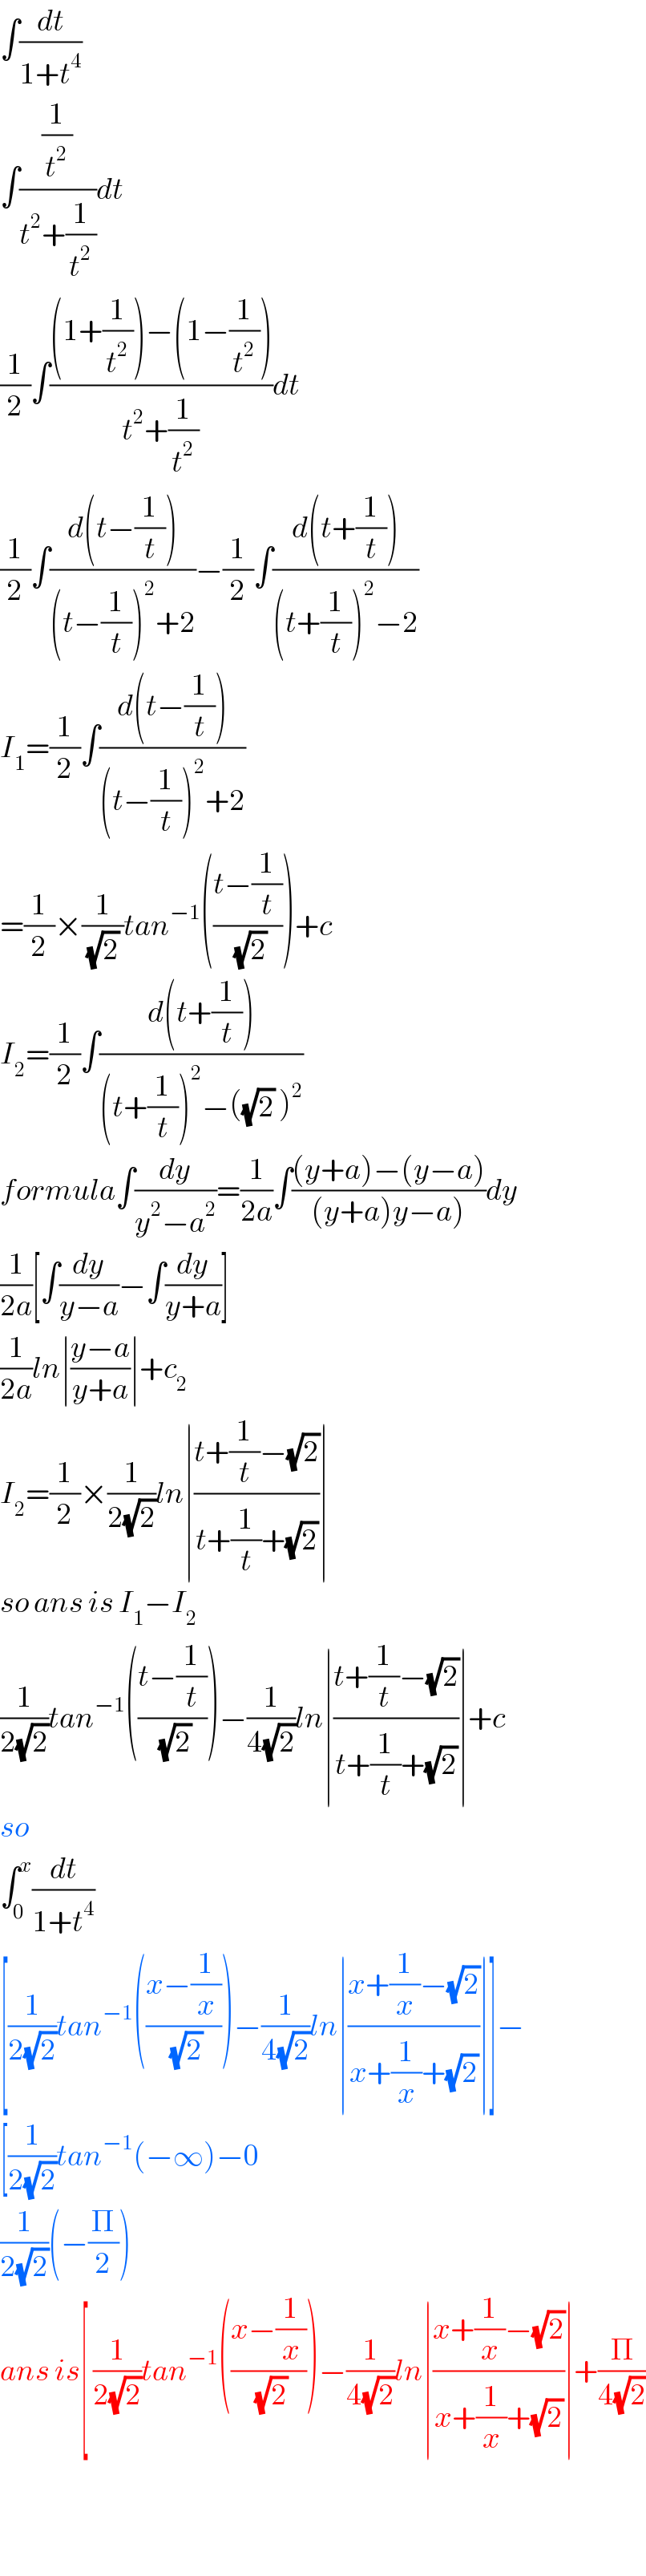 ∫(dt/(1+t^4 ))  ∫((1/t^2 )/(t^2 +(1/t^2 )))dt  (1/2)∫(((1+(1/t^2 ))−(1−(1/t^2 )))/(t^2 +(1/t^2 )))dt  (1/2)∫((d(t−(1/t)))/((t−(1/t))^2 +2))−(1/2)∫((d(t+(1/t)))/((t+(1/t))^2 −2))  I_1 =(1/2)∫((d(t−(1/t)))/((t−(1/t))^2 +2))  =(1/2)×(1/((√2) ))tan^(−1) (((t−(1/t))/(√2)))+c  I_2 =(1/2)∫((d(t+(1/t)))/((t+(1/t))^2 −((√2) )^2 ))  formula∫(dy/(y^2 −a^2 ))=(1/(2a))∫(((y+a)−(y−a))/((y+a)y−a)))dy  (1/(2a))[∫(dy/(y−a))−∫(dy/(y+a))]  (1/(2a))ln∣((y−a)/(y+a))∣+c_2   I_2 =(1/2)×(1/(2(√2)))ln∣((t+(1/t)−(√2))/(t+(1/t)+(√2)))∣  so ans is I_1 −I_2   (1/(2(√2)))tan^(−1) (((t−(1/t))/(√2)))−(1/(4(√2)))ln∣((t+(1/t)−(√2))/(t+(1/t)+(√2)))∣+c  so  ∫_0 ^x (dt/(1+t^4 ))  [(1/(2(√2)))tan^(−1) (((x−(1/x))/(√2)))−(1/(4(√2)))ln∣((x+(1/x)−(√2))/(x+(1/x)+(√2)))∣]−  [(1/(2(√2)))tan^(−1) (−∞)−0  (1/(2(√2)))(−(Π/2))  ans is[ (1/(2(√2)))tan^(−1) (((x−(1/x))/(√2)))−(1/(4(√2)))ln∣((x+(1/x)−(√2))/(x+(1/x)+(√2)))∣+(Π/(4(√2)))      